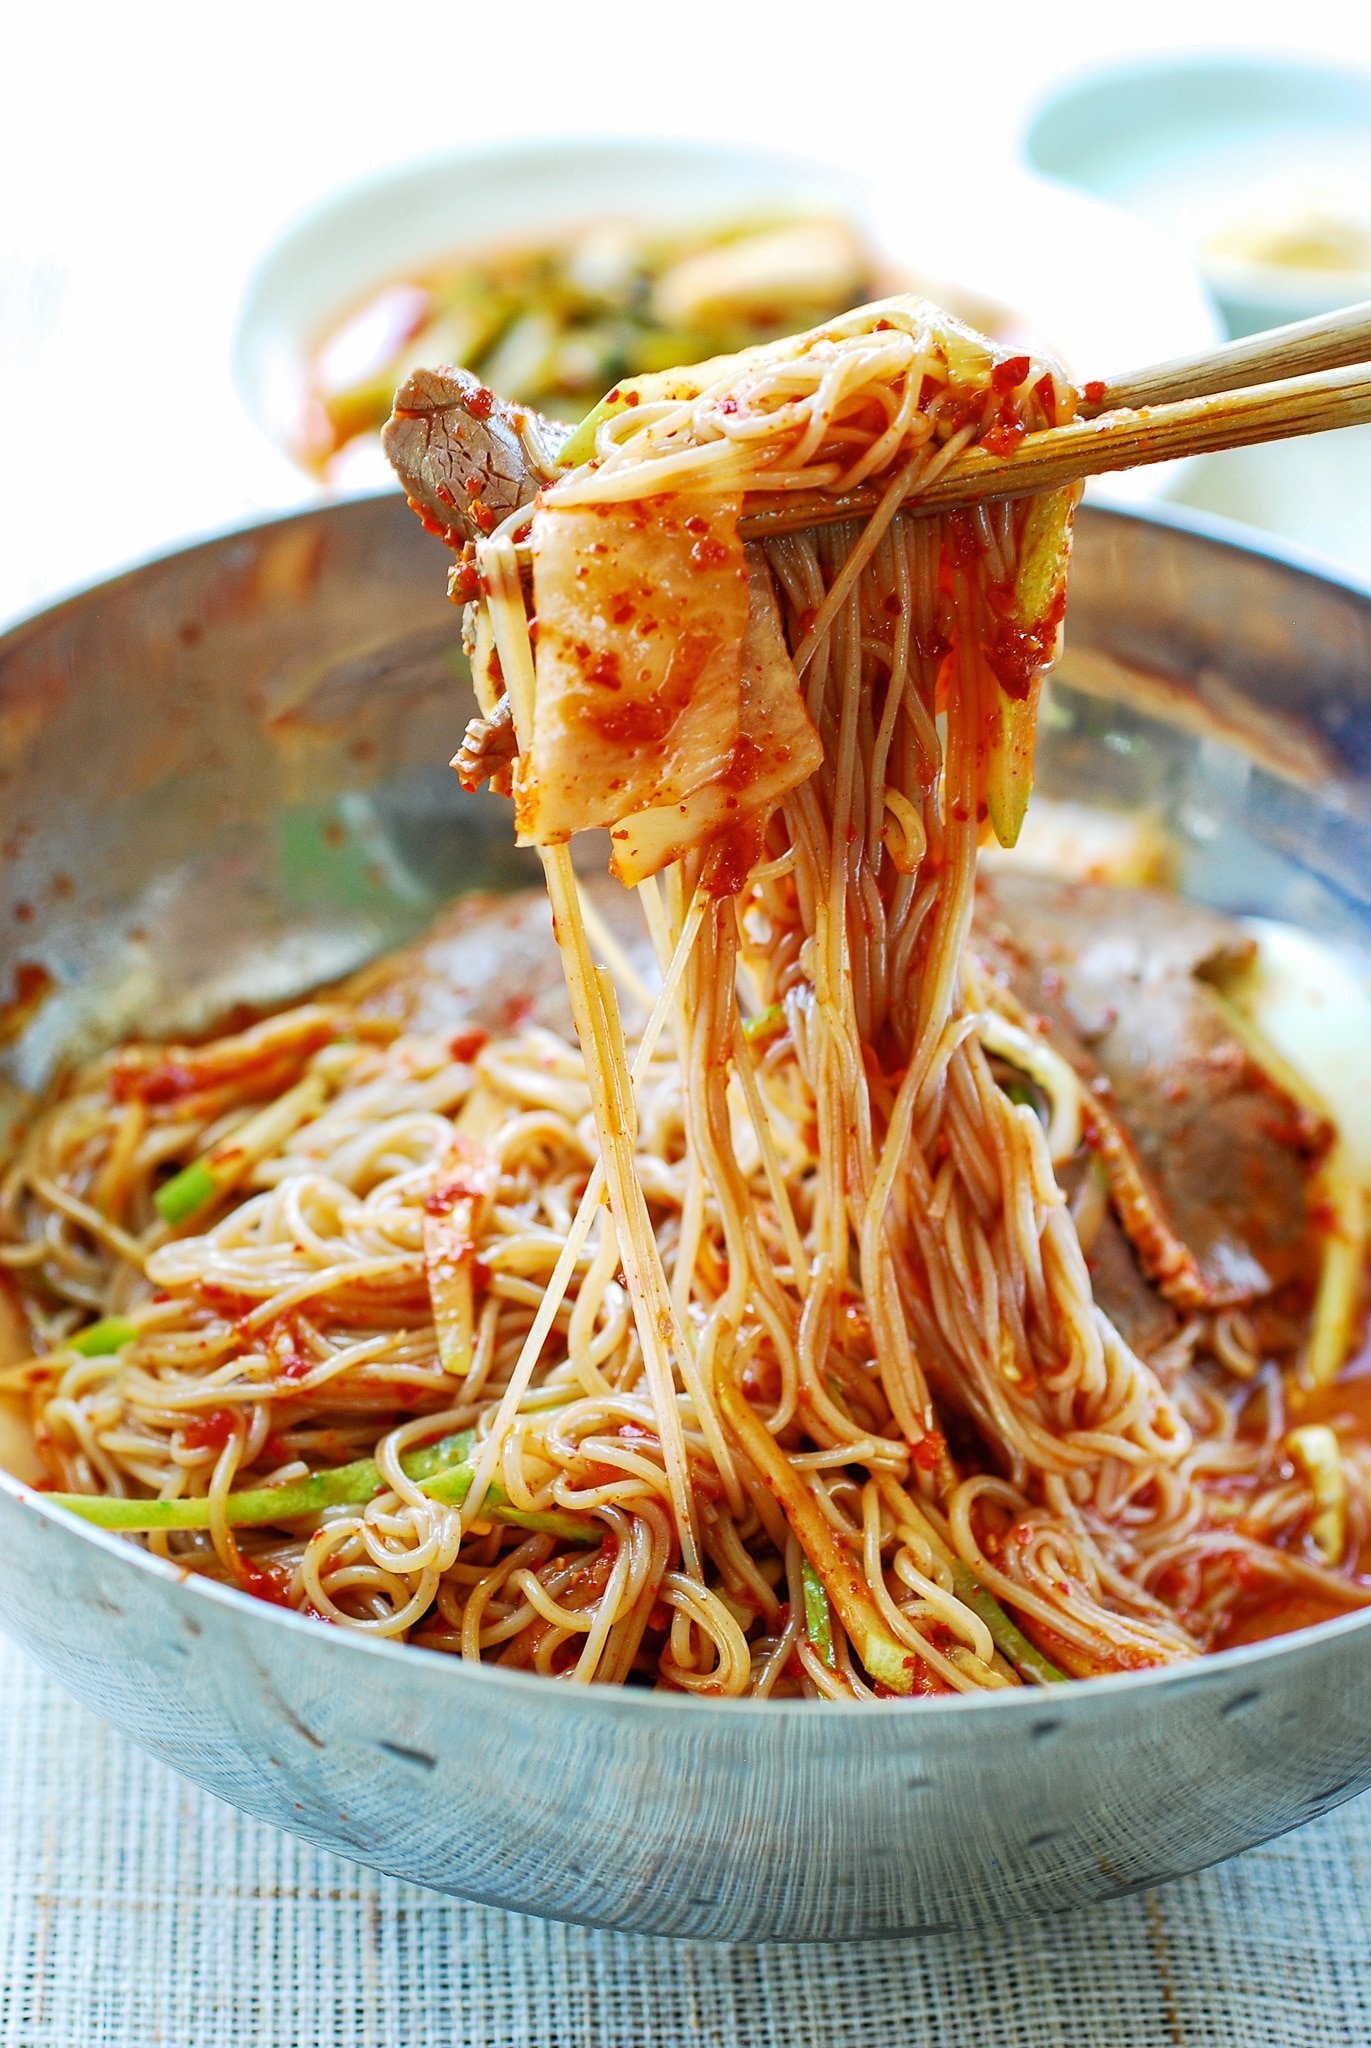 DSC 0025 3 - Naengmyeon (Cold Noodles)